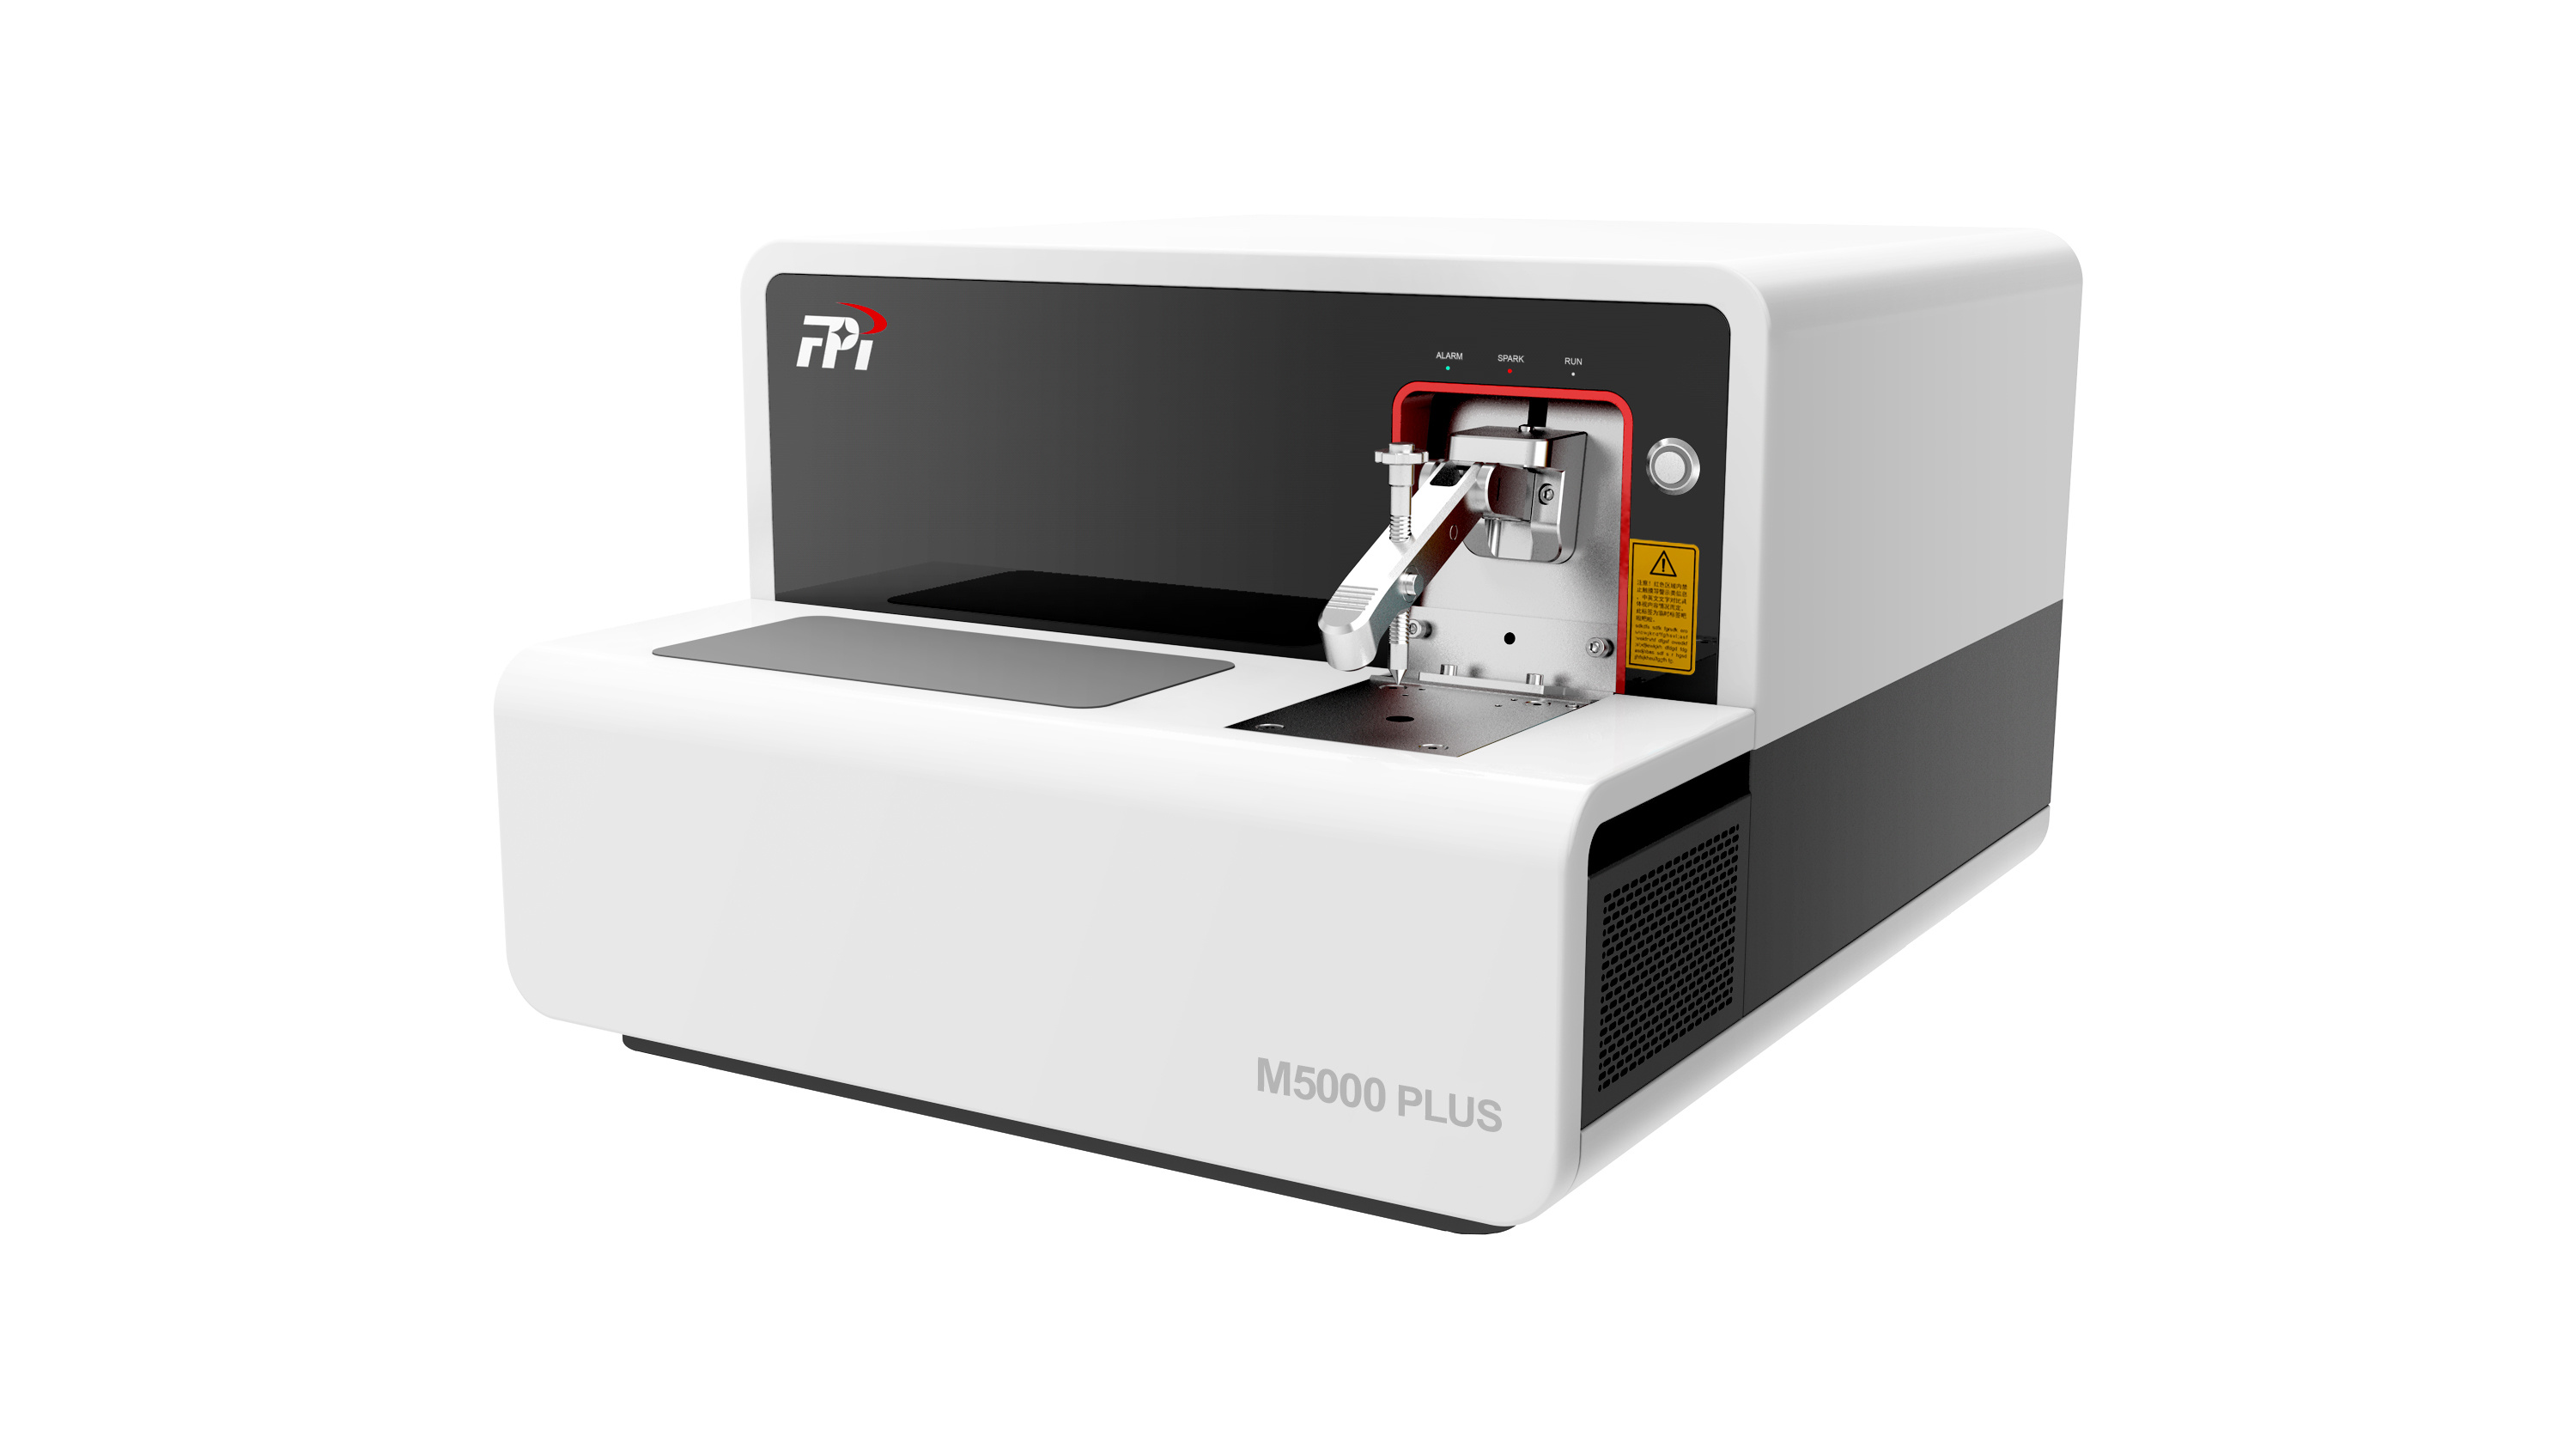 聚光科技 M5000 PLUS 直读光谱仪